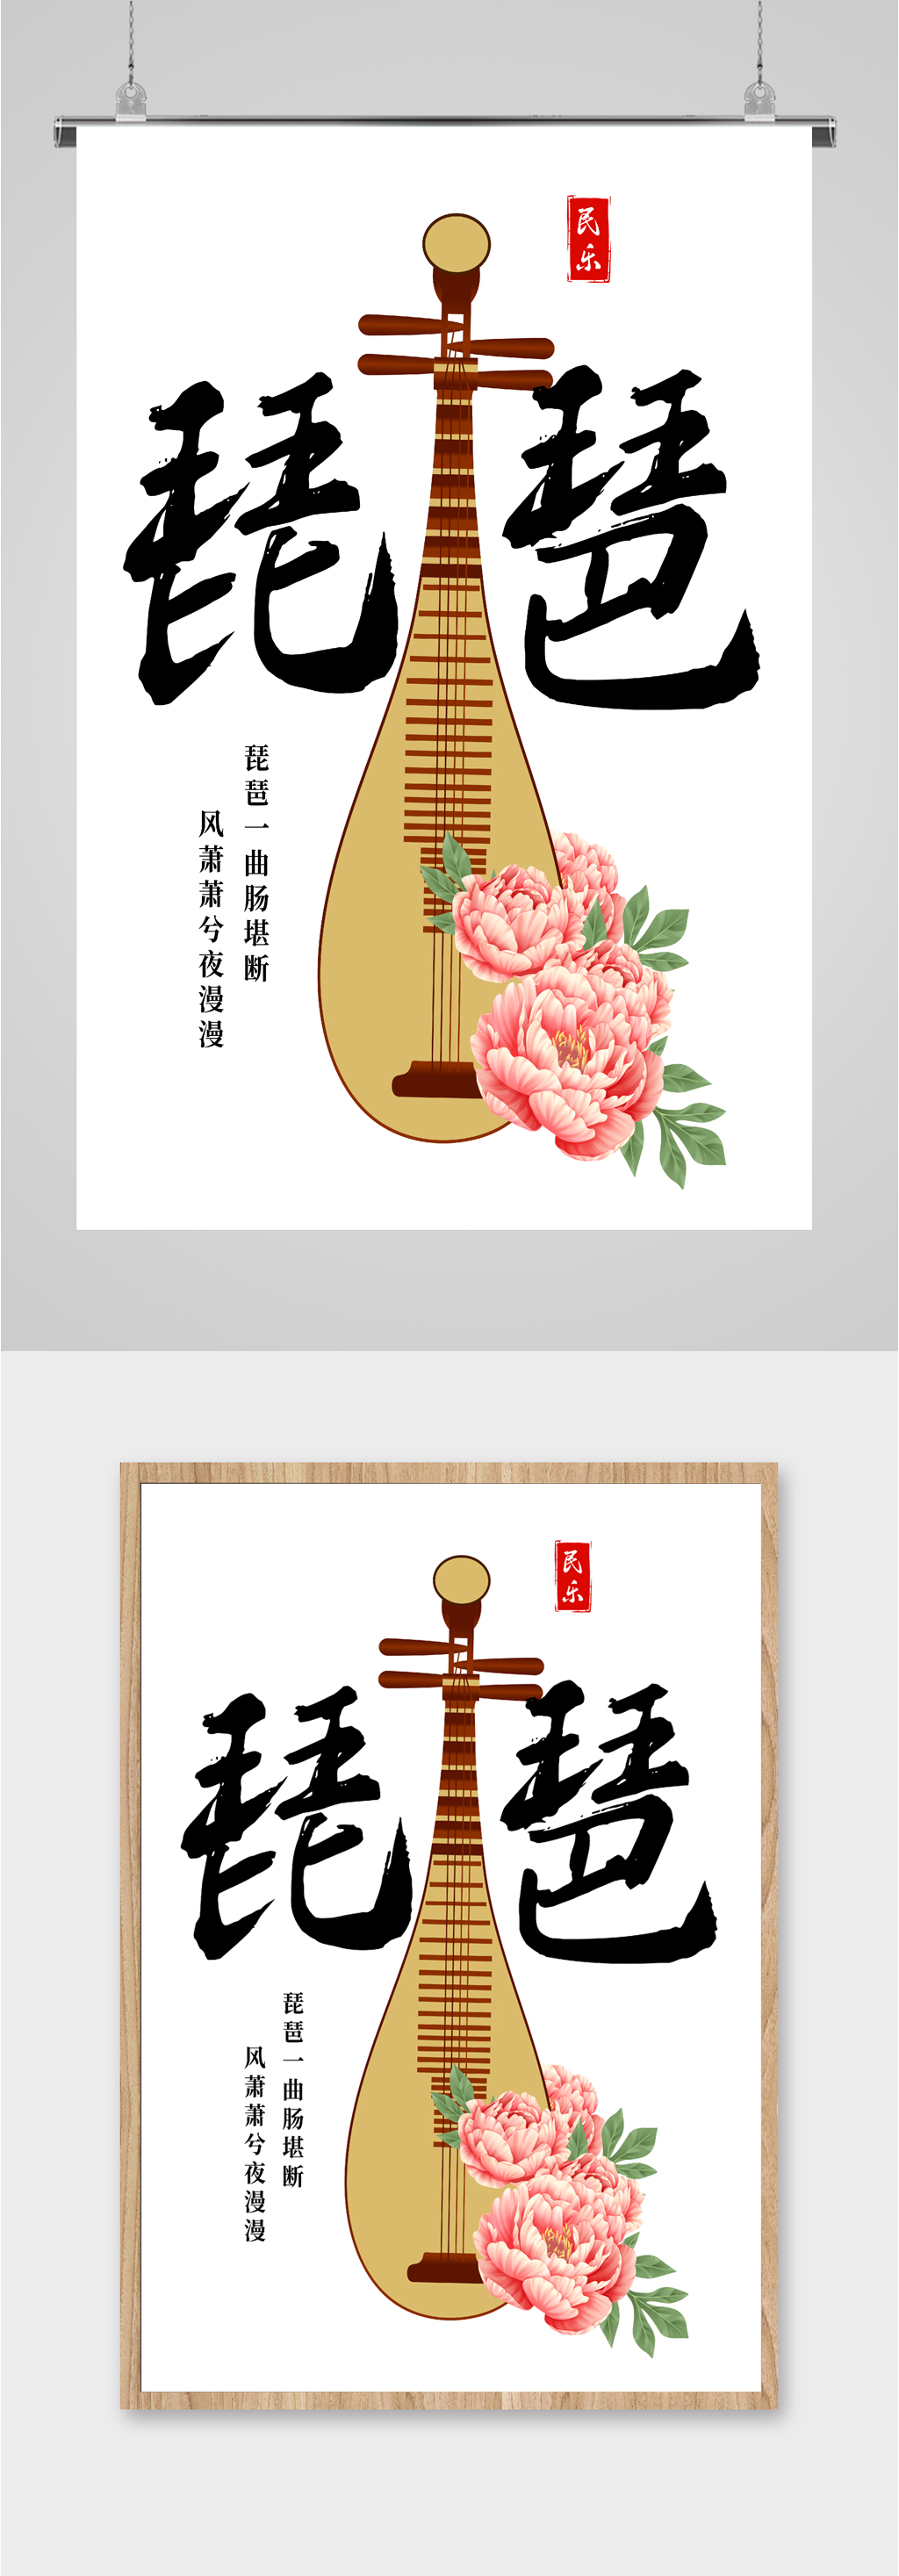 众图网独家提供传统民乐琵琶海报素材免费下载,本作品是由